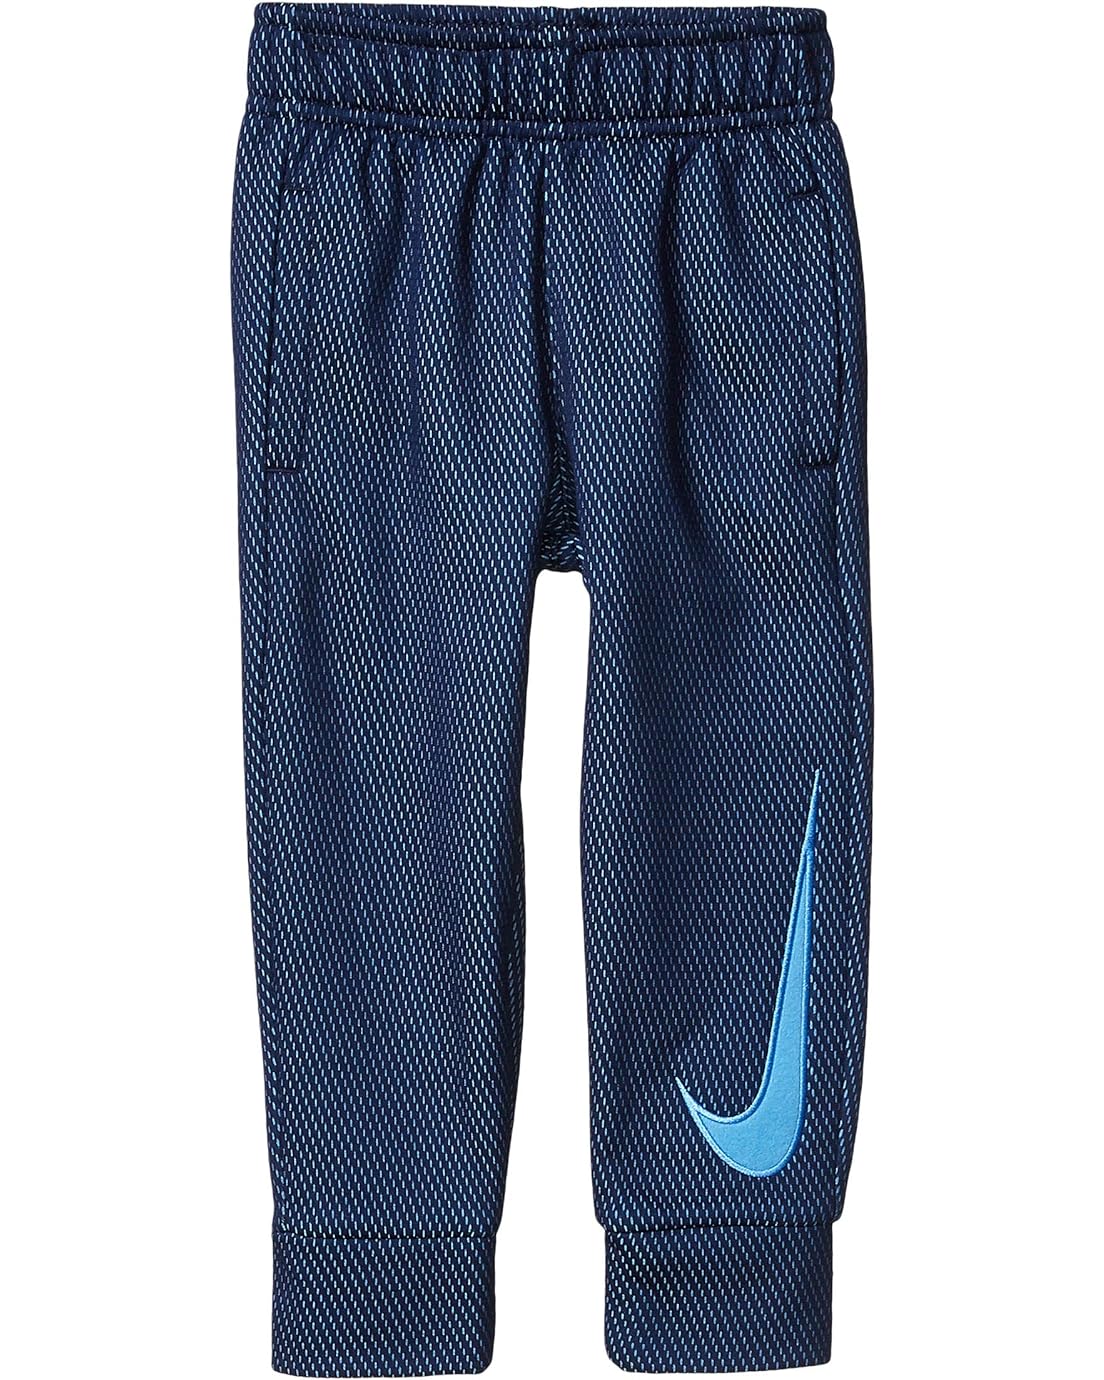 Nike Kids Mesh Fleece Track Pants (Toddler)